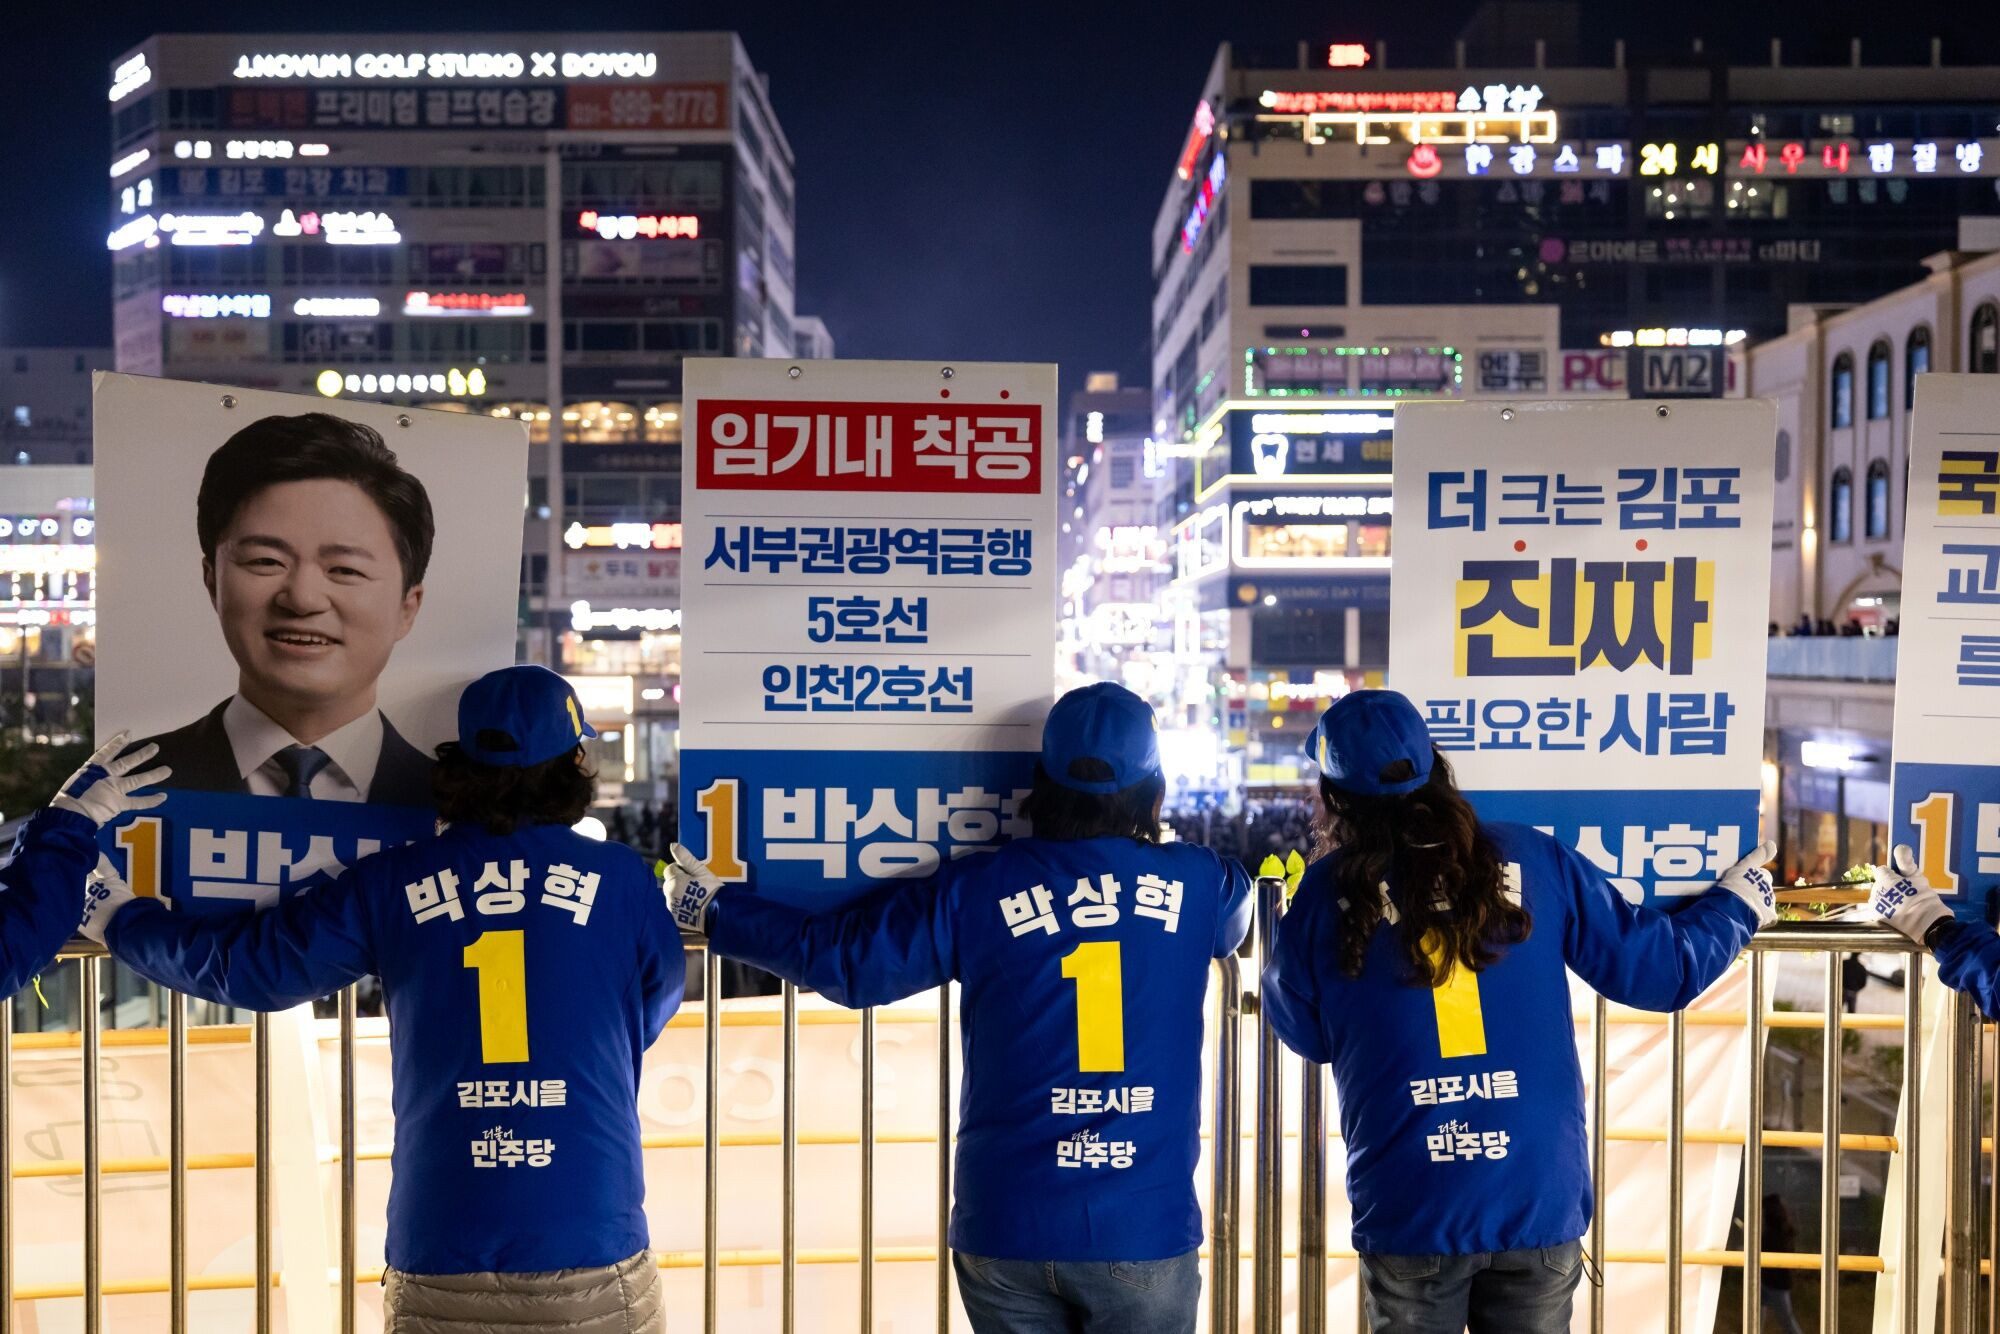 south korean opposition set for landslide election win